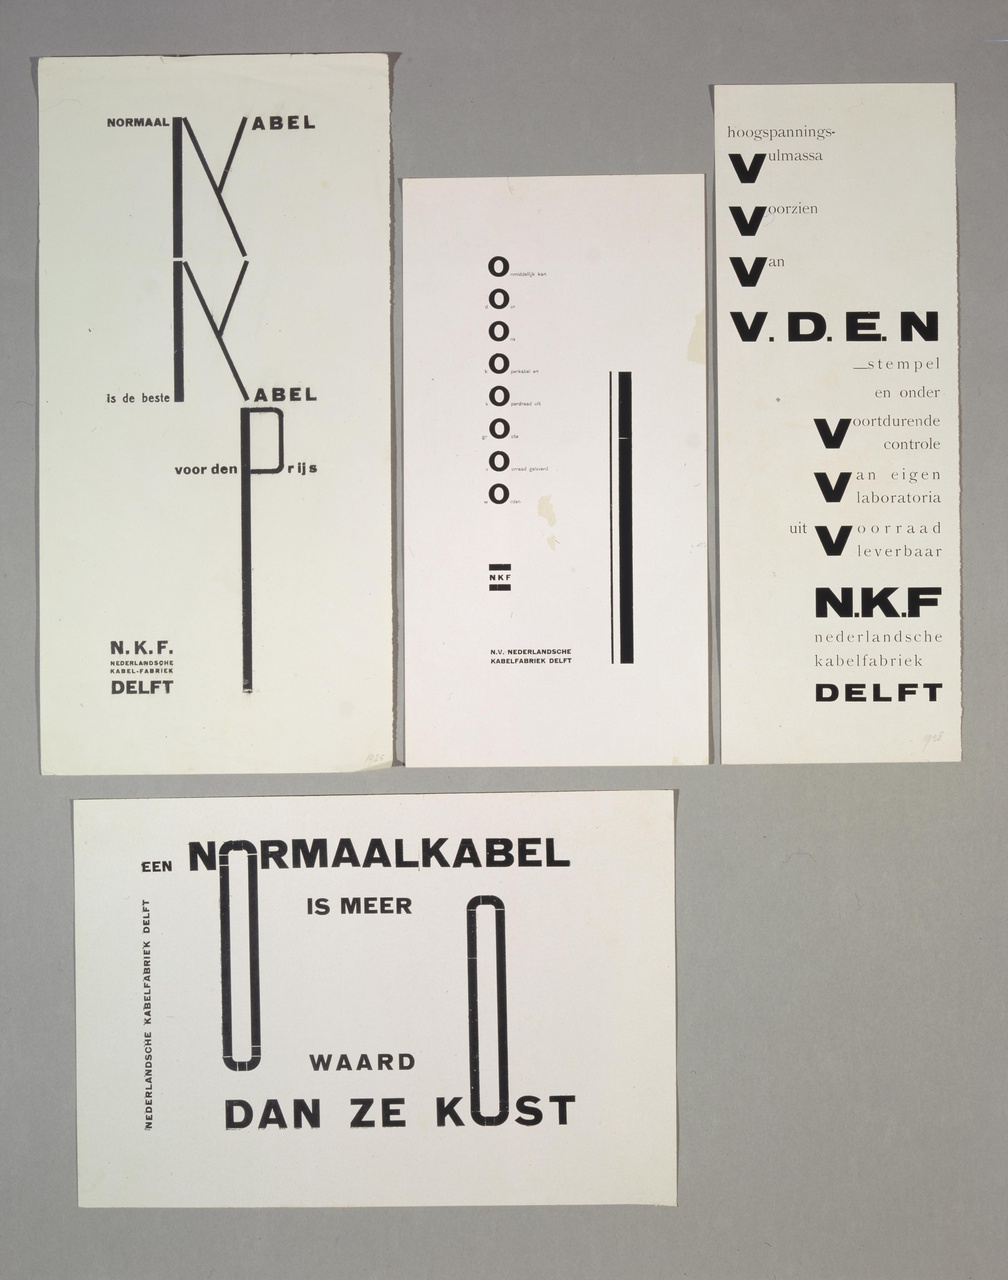 Advertenties voor de Nederlandse Kabelfabriek, Delft